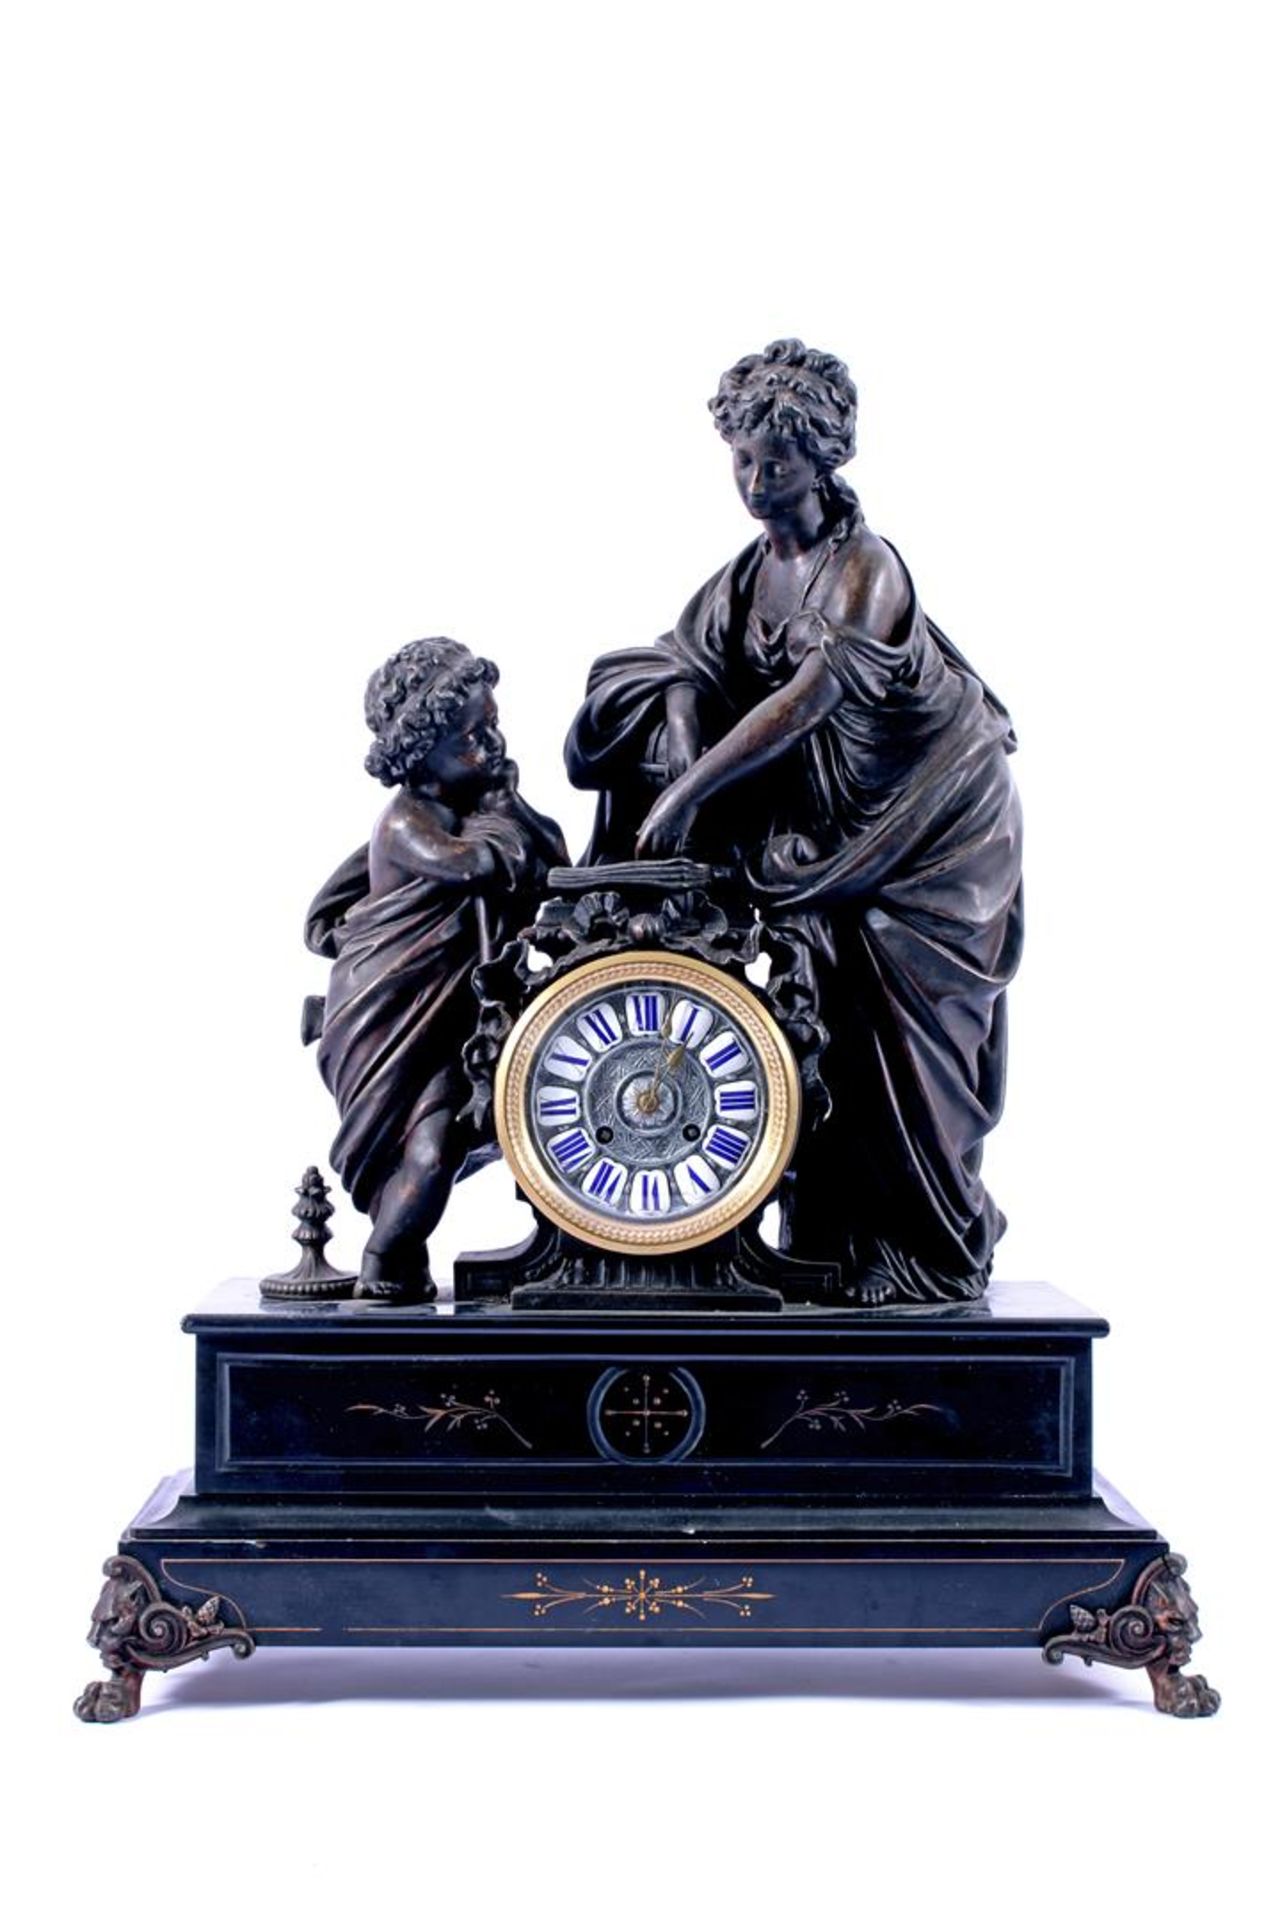 Zwart marmeren 19e eeuwse pendule met zamak beeldengroep vrouw met kind op top, uurwerk gemerkt